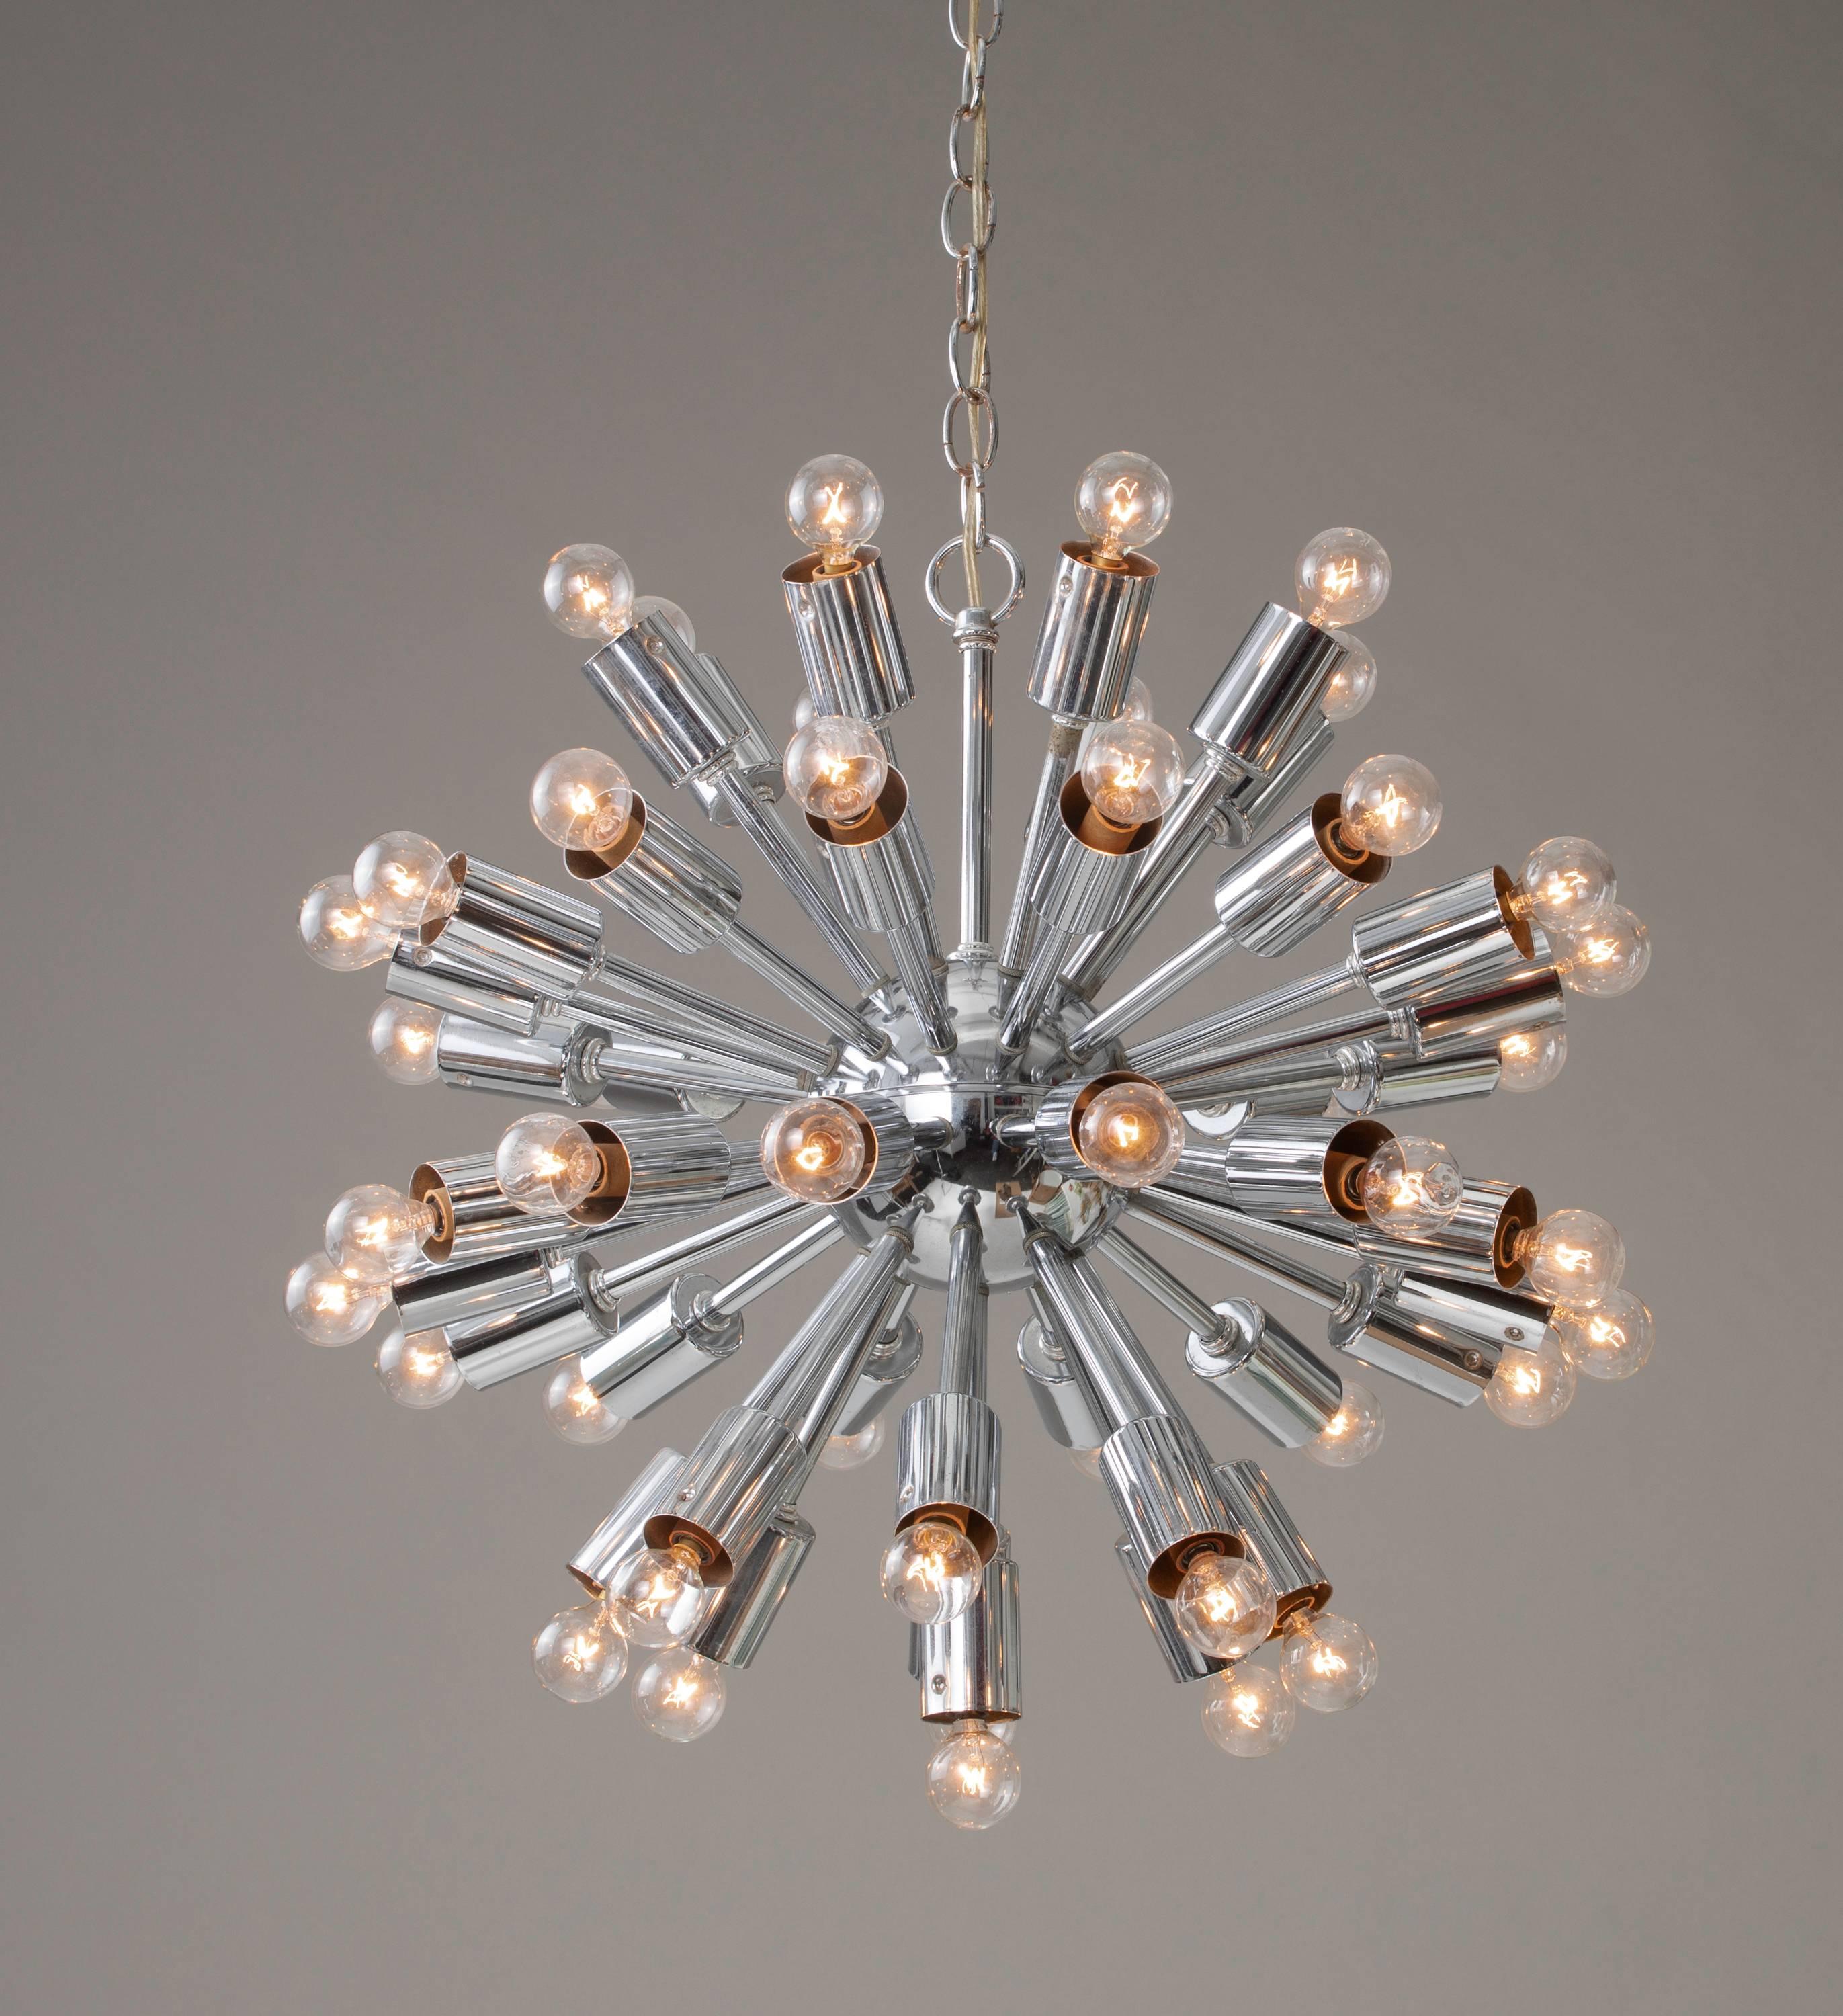 1970s authentic midcentury chrome Sputnik chandelier. Measure: 24” round, 42 lights. Classic Sputnik style.
 